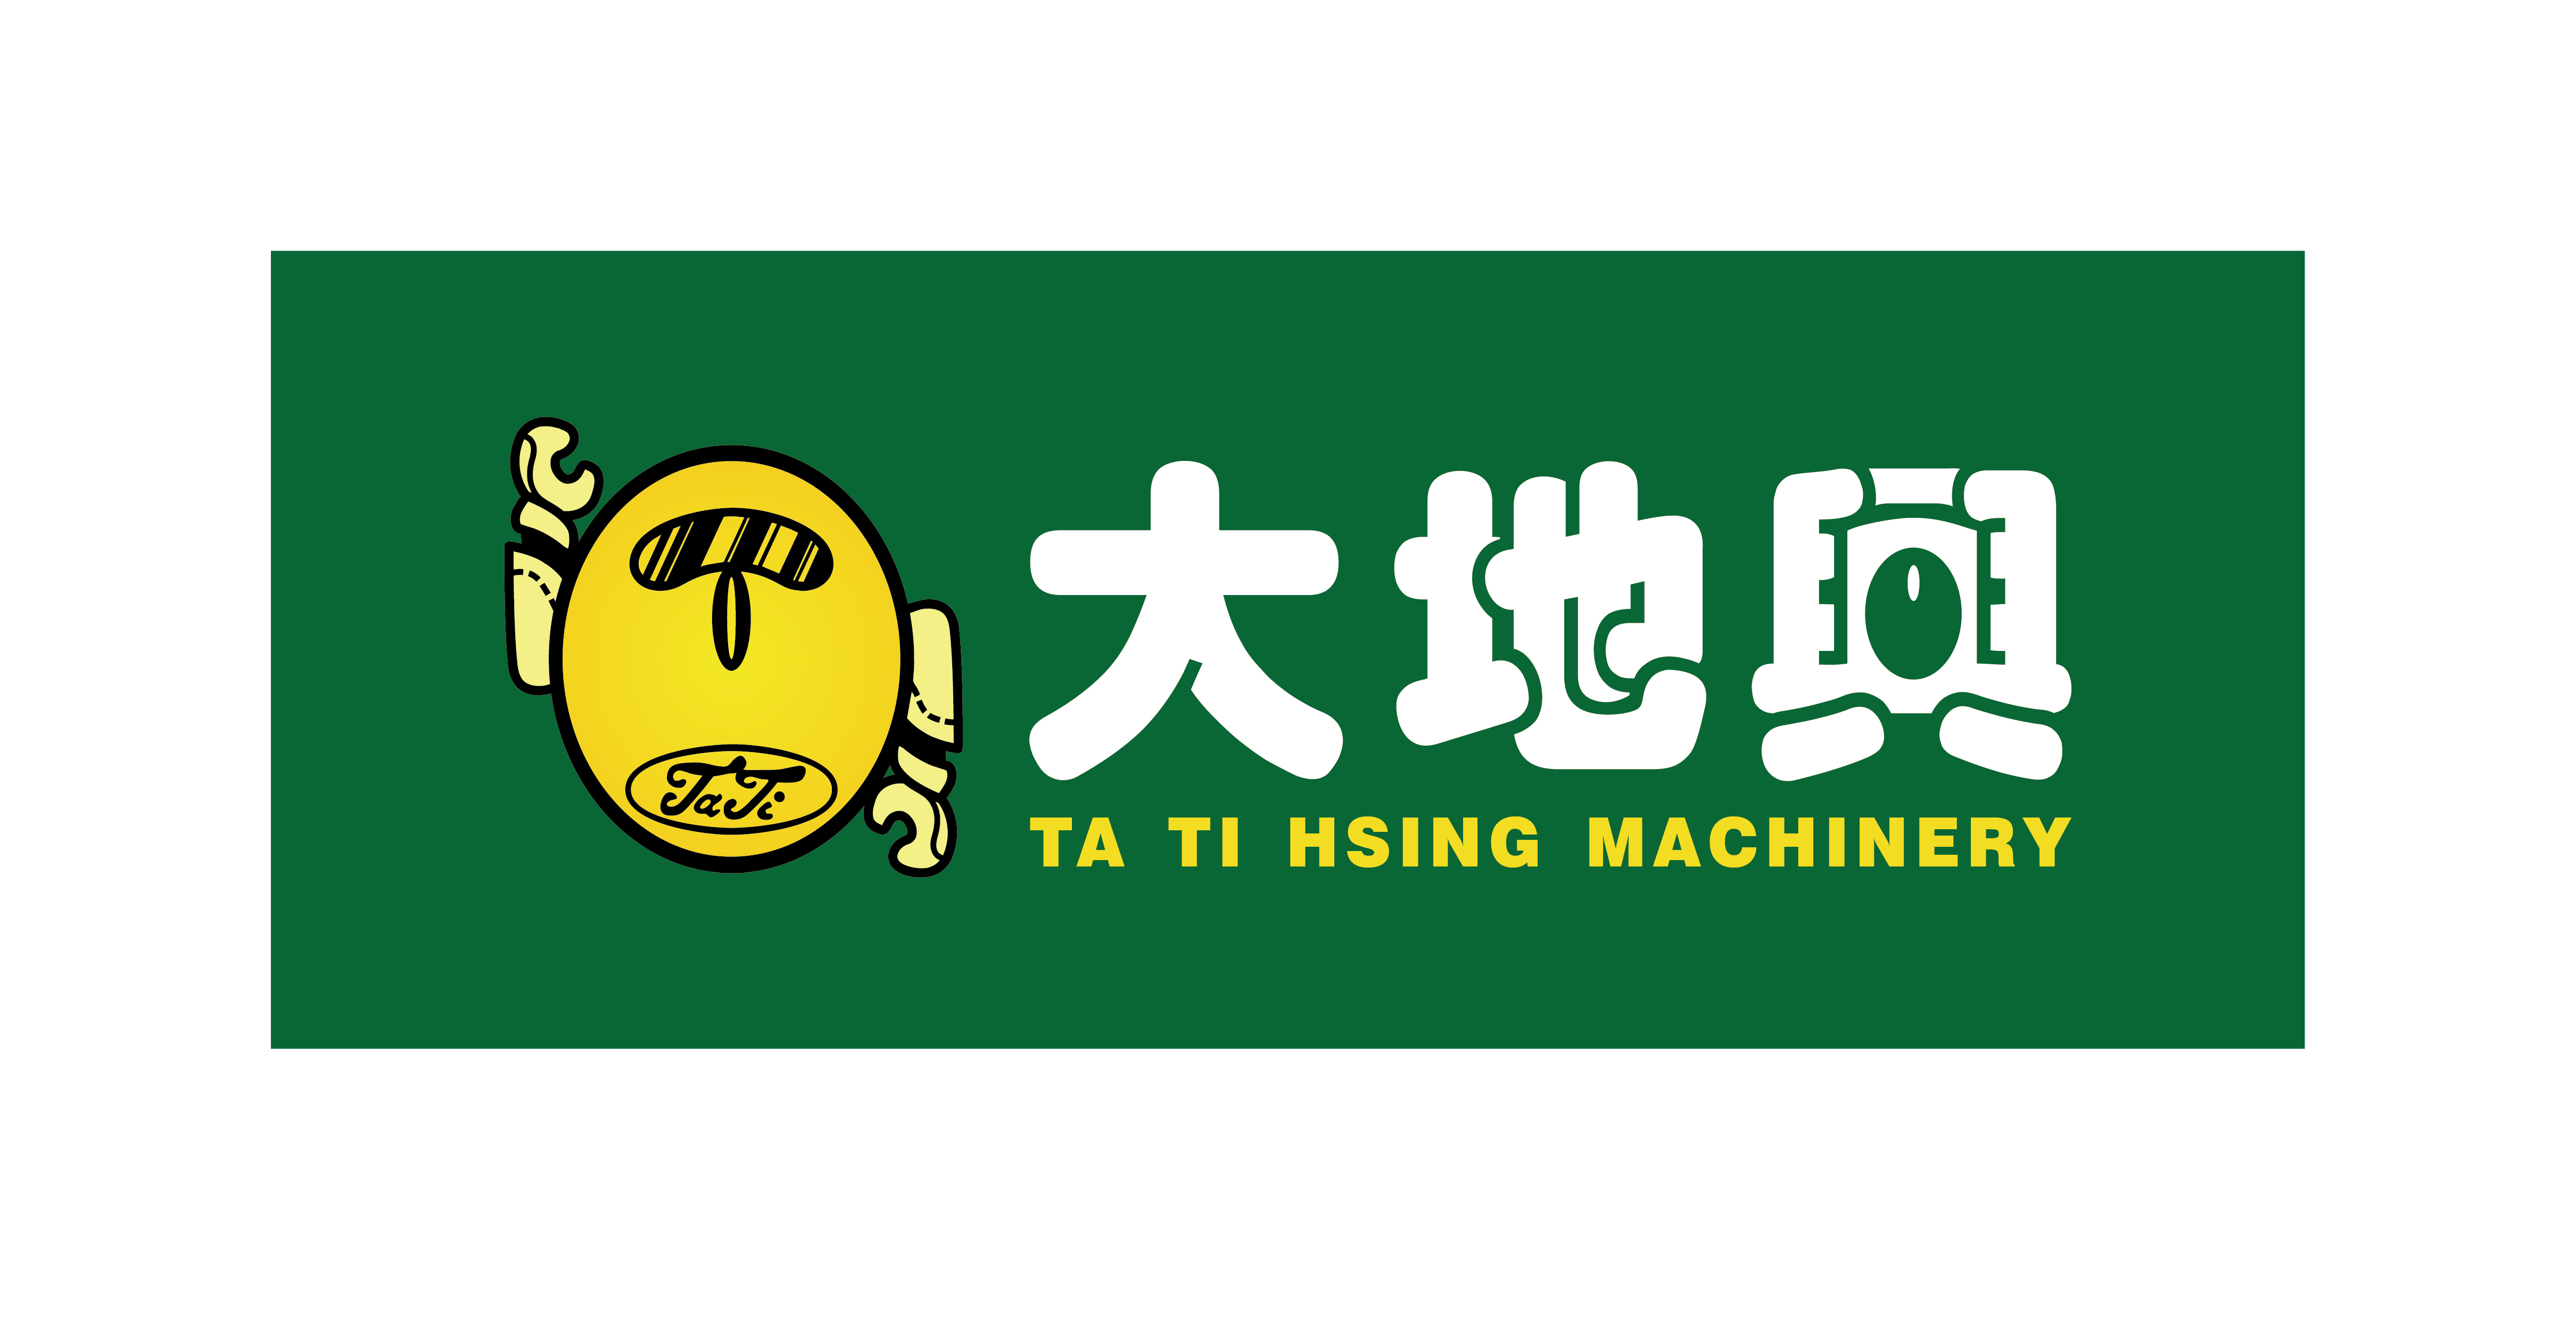 Tatihsing Machinery Co Ltd